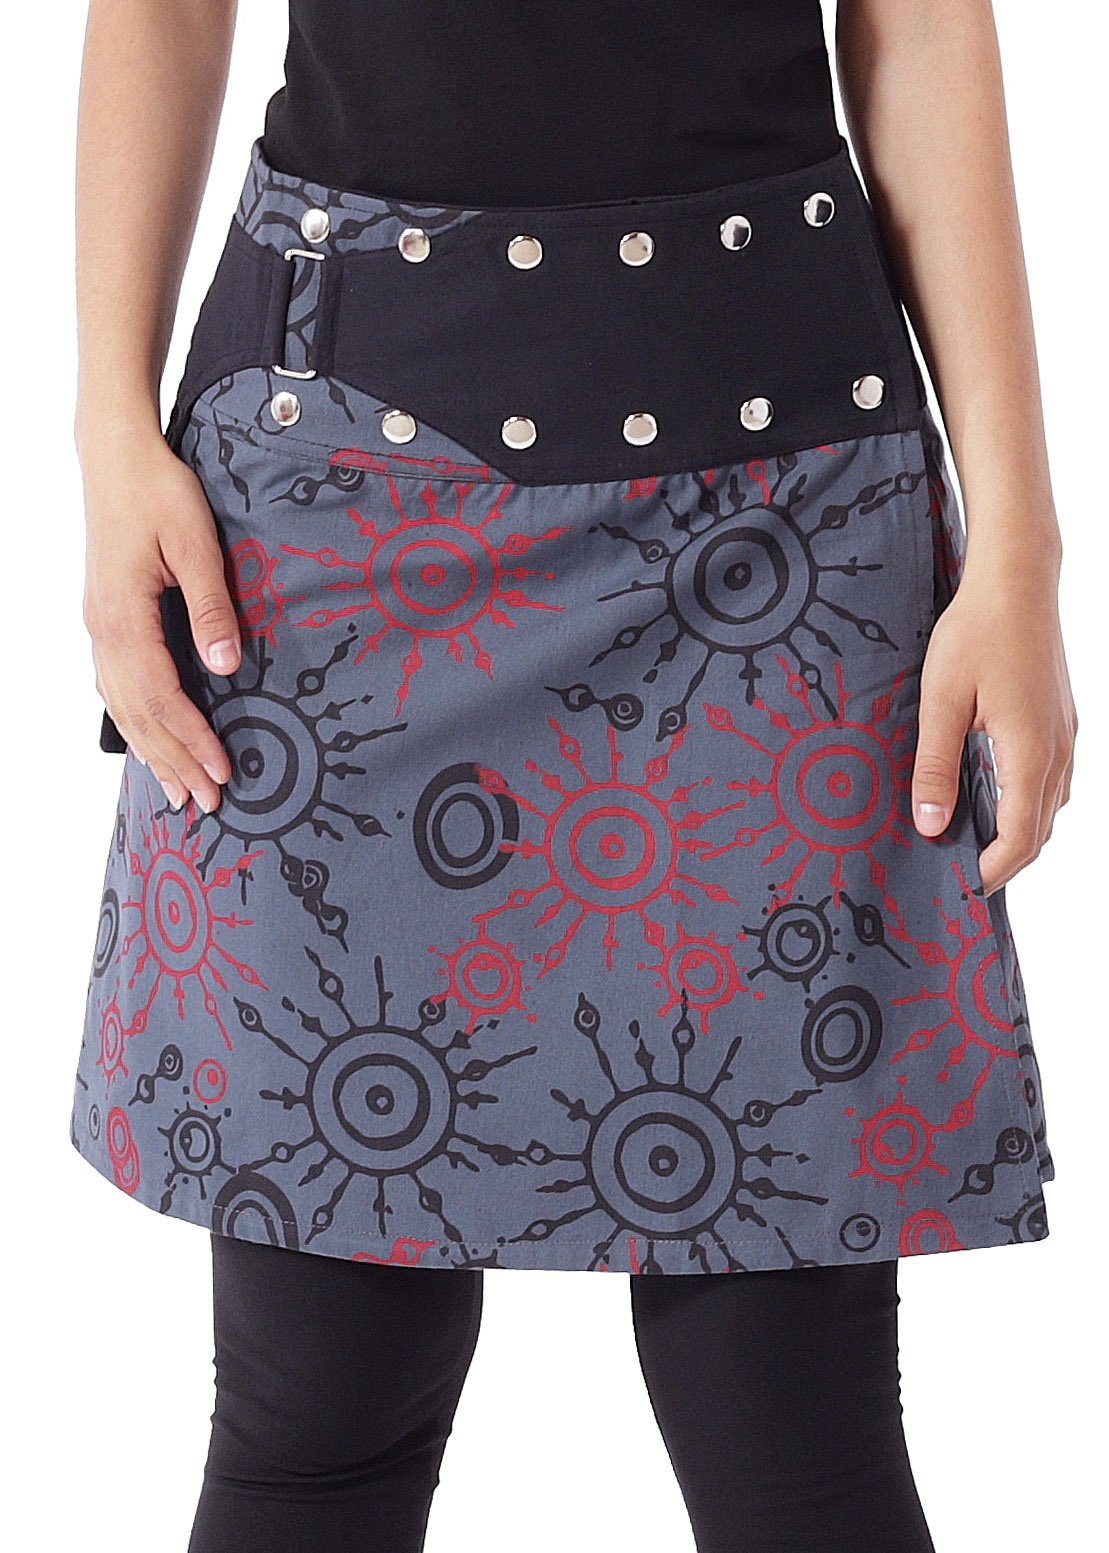 PUREWONDER Wickelrock Damen Rock mit auffälligem Muster und Tasche sk174 Baumwolle Einheitsgröße